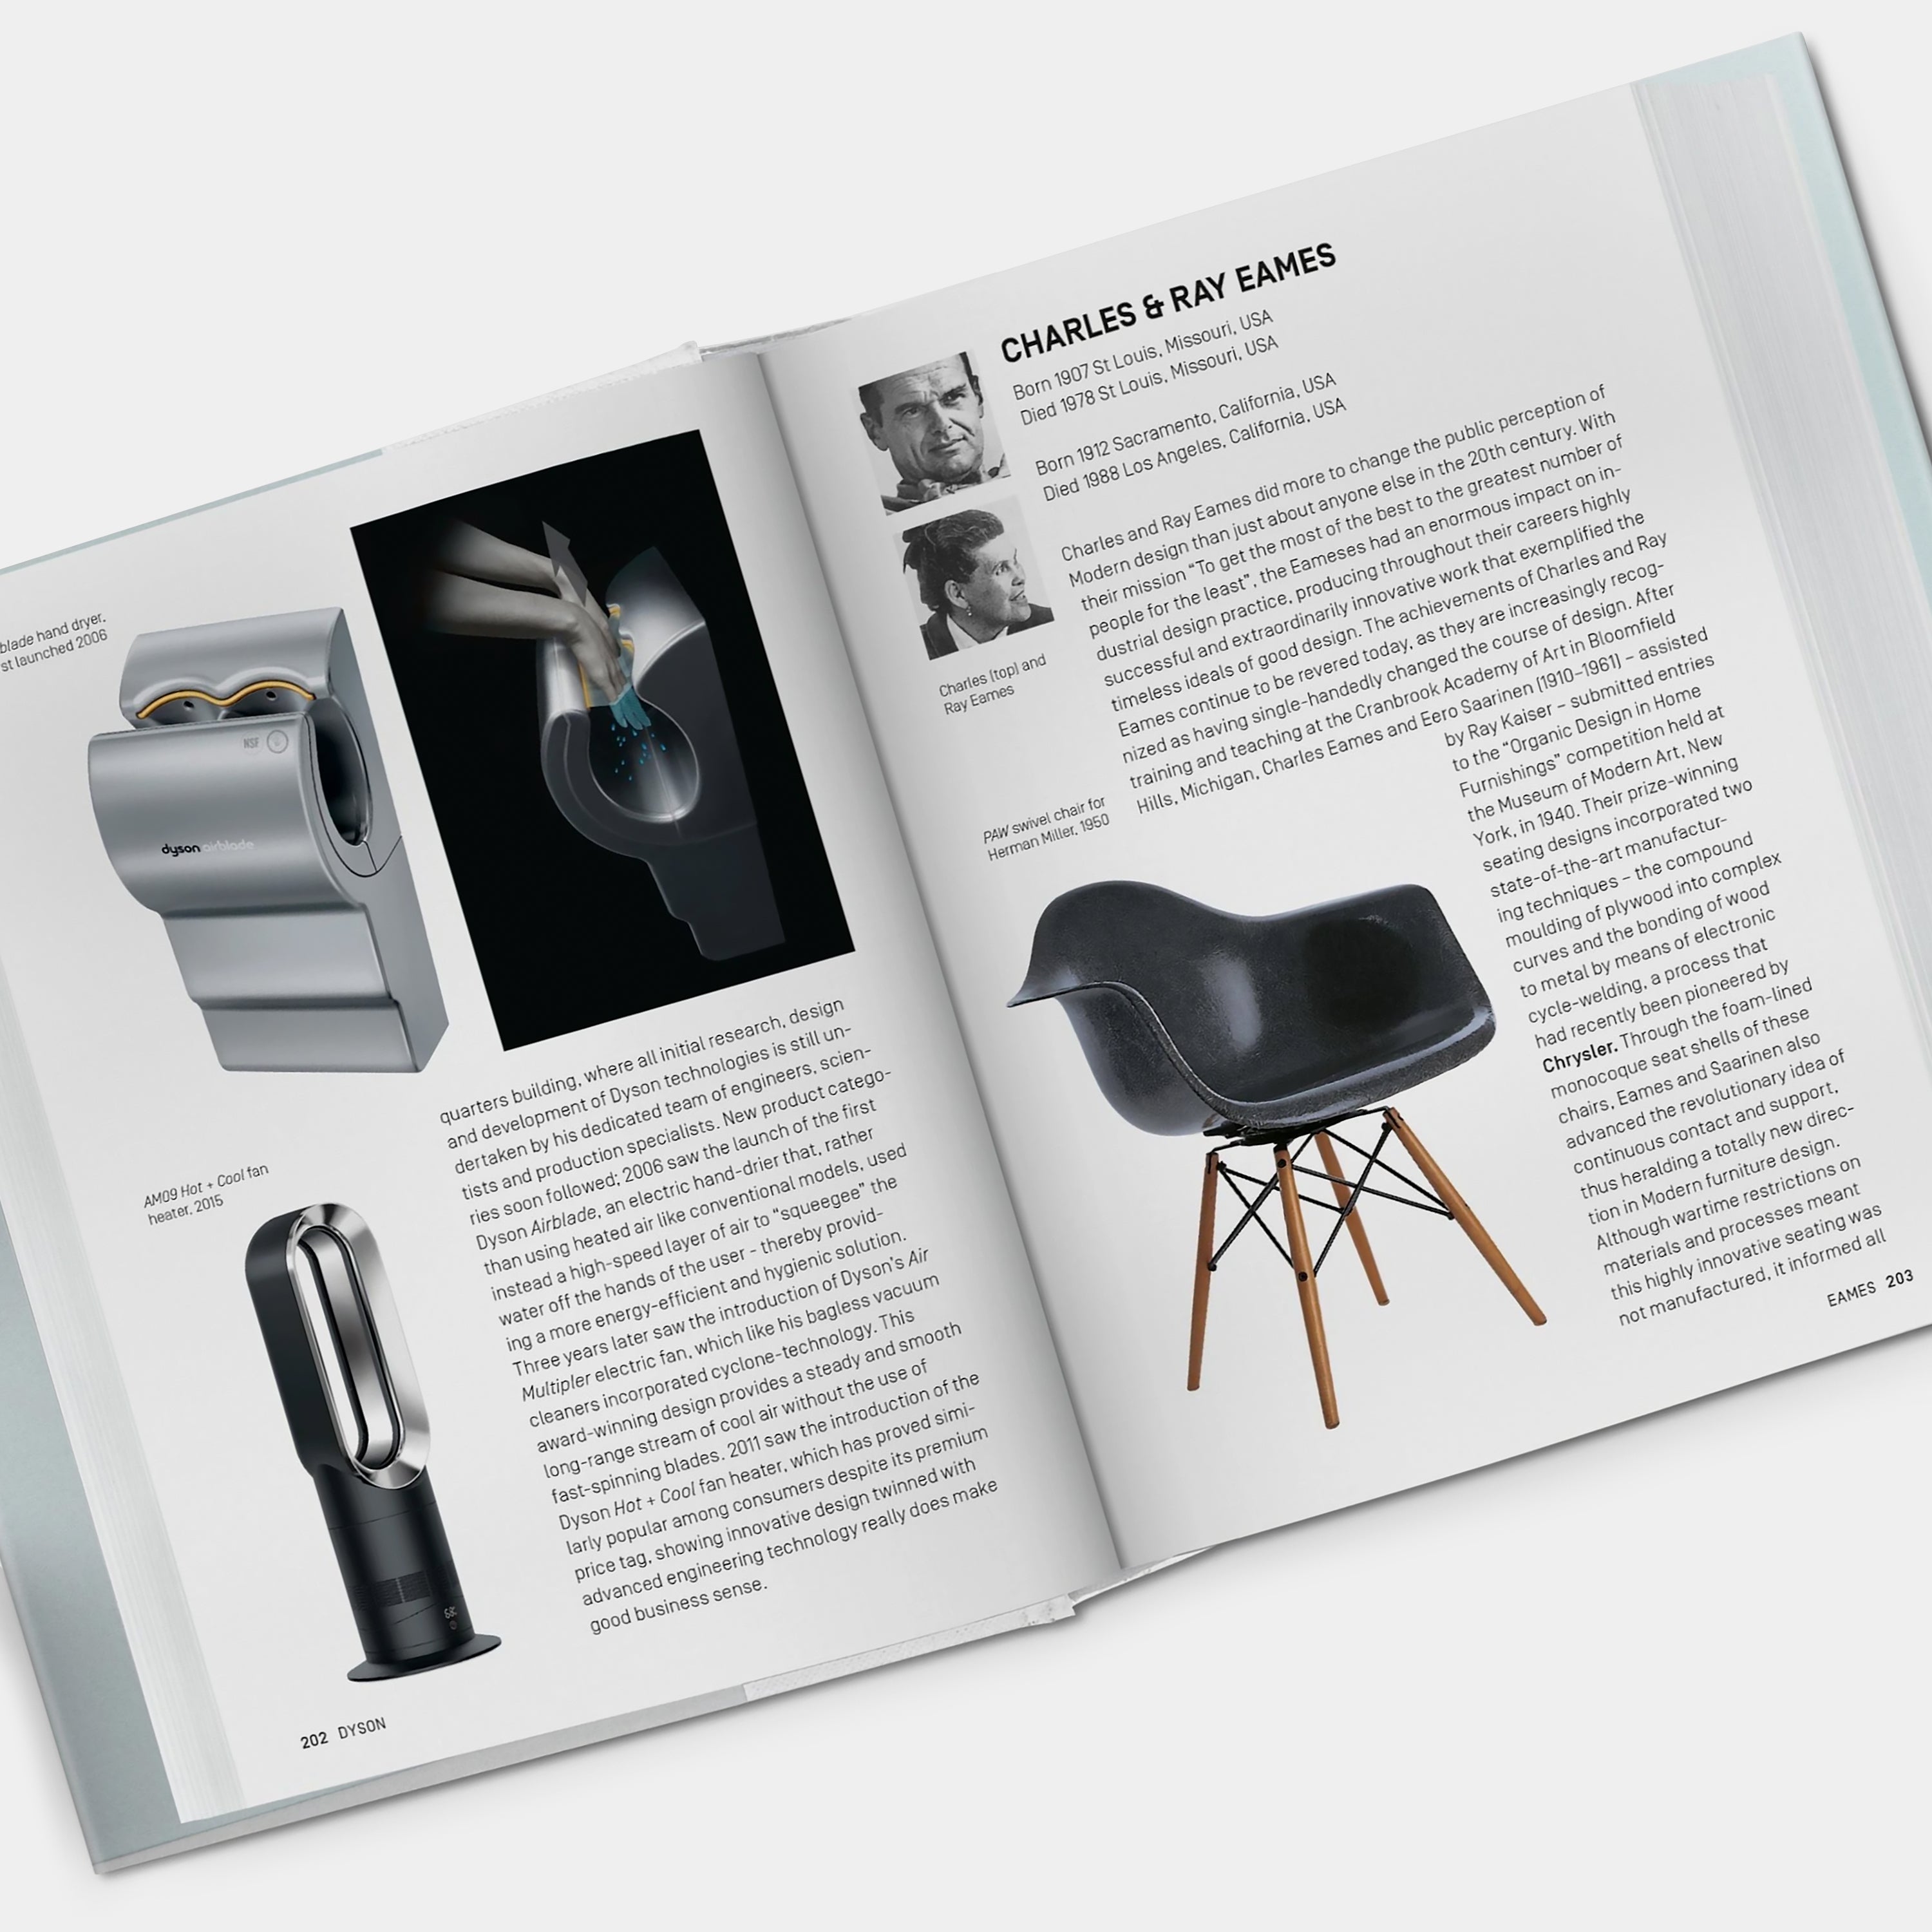 Industrial Design A–Z Taschen Book